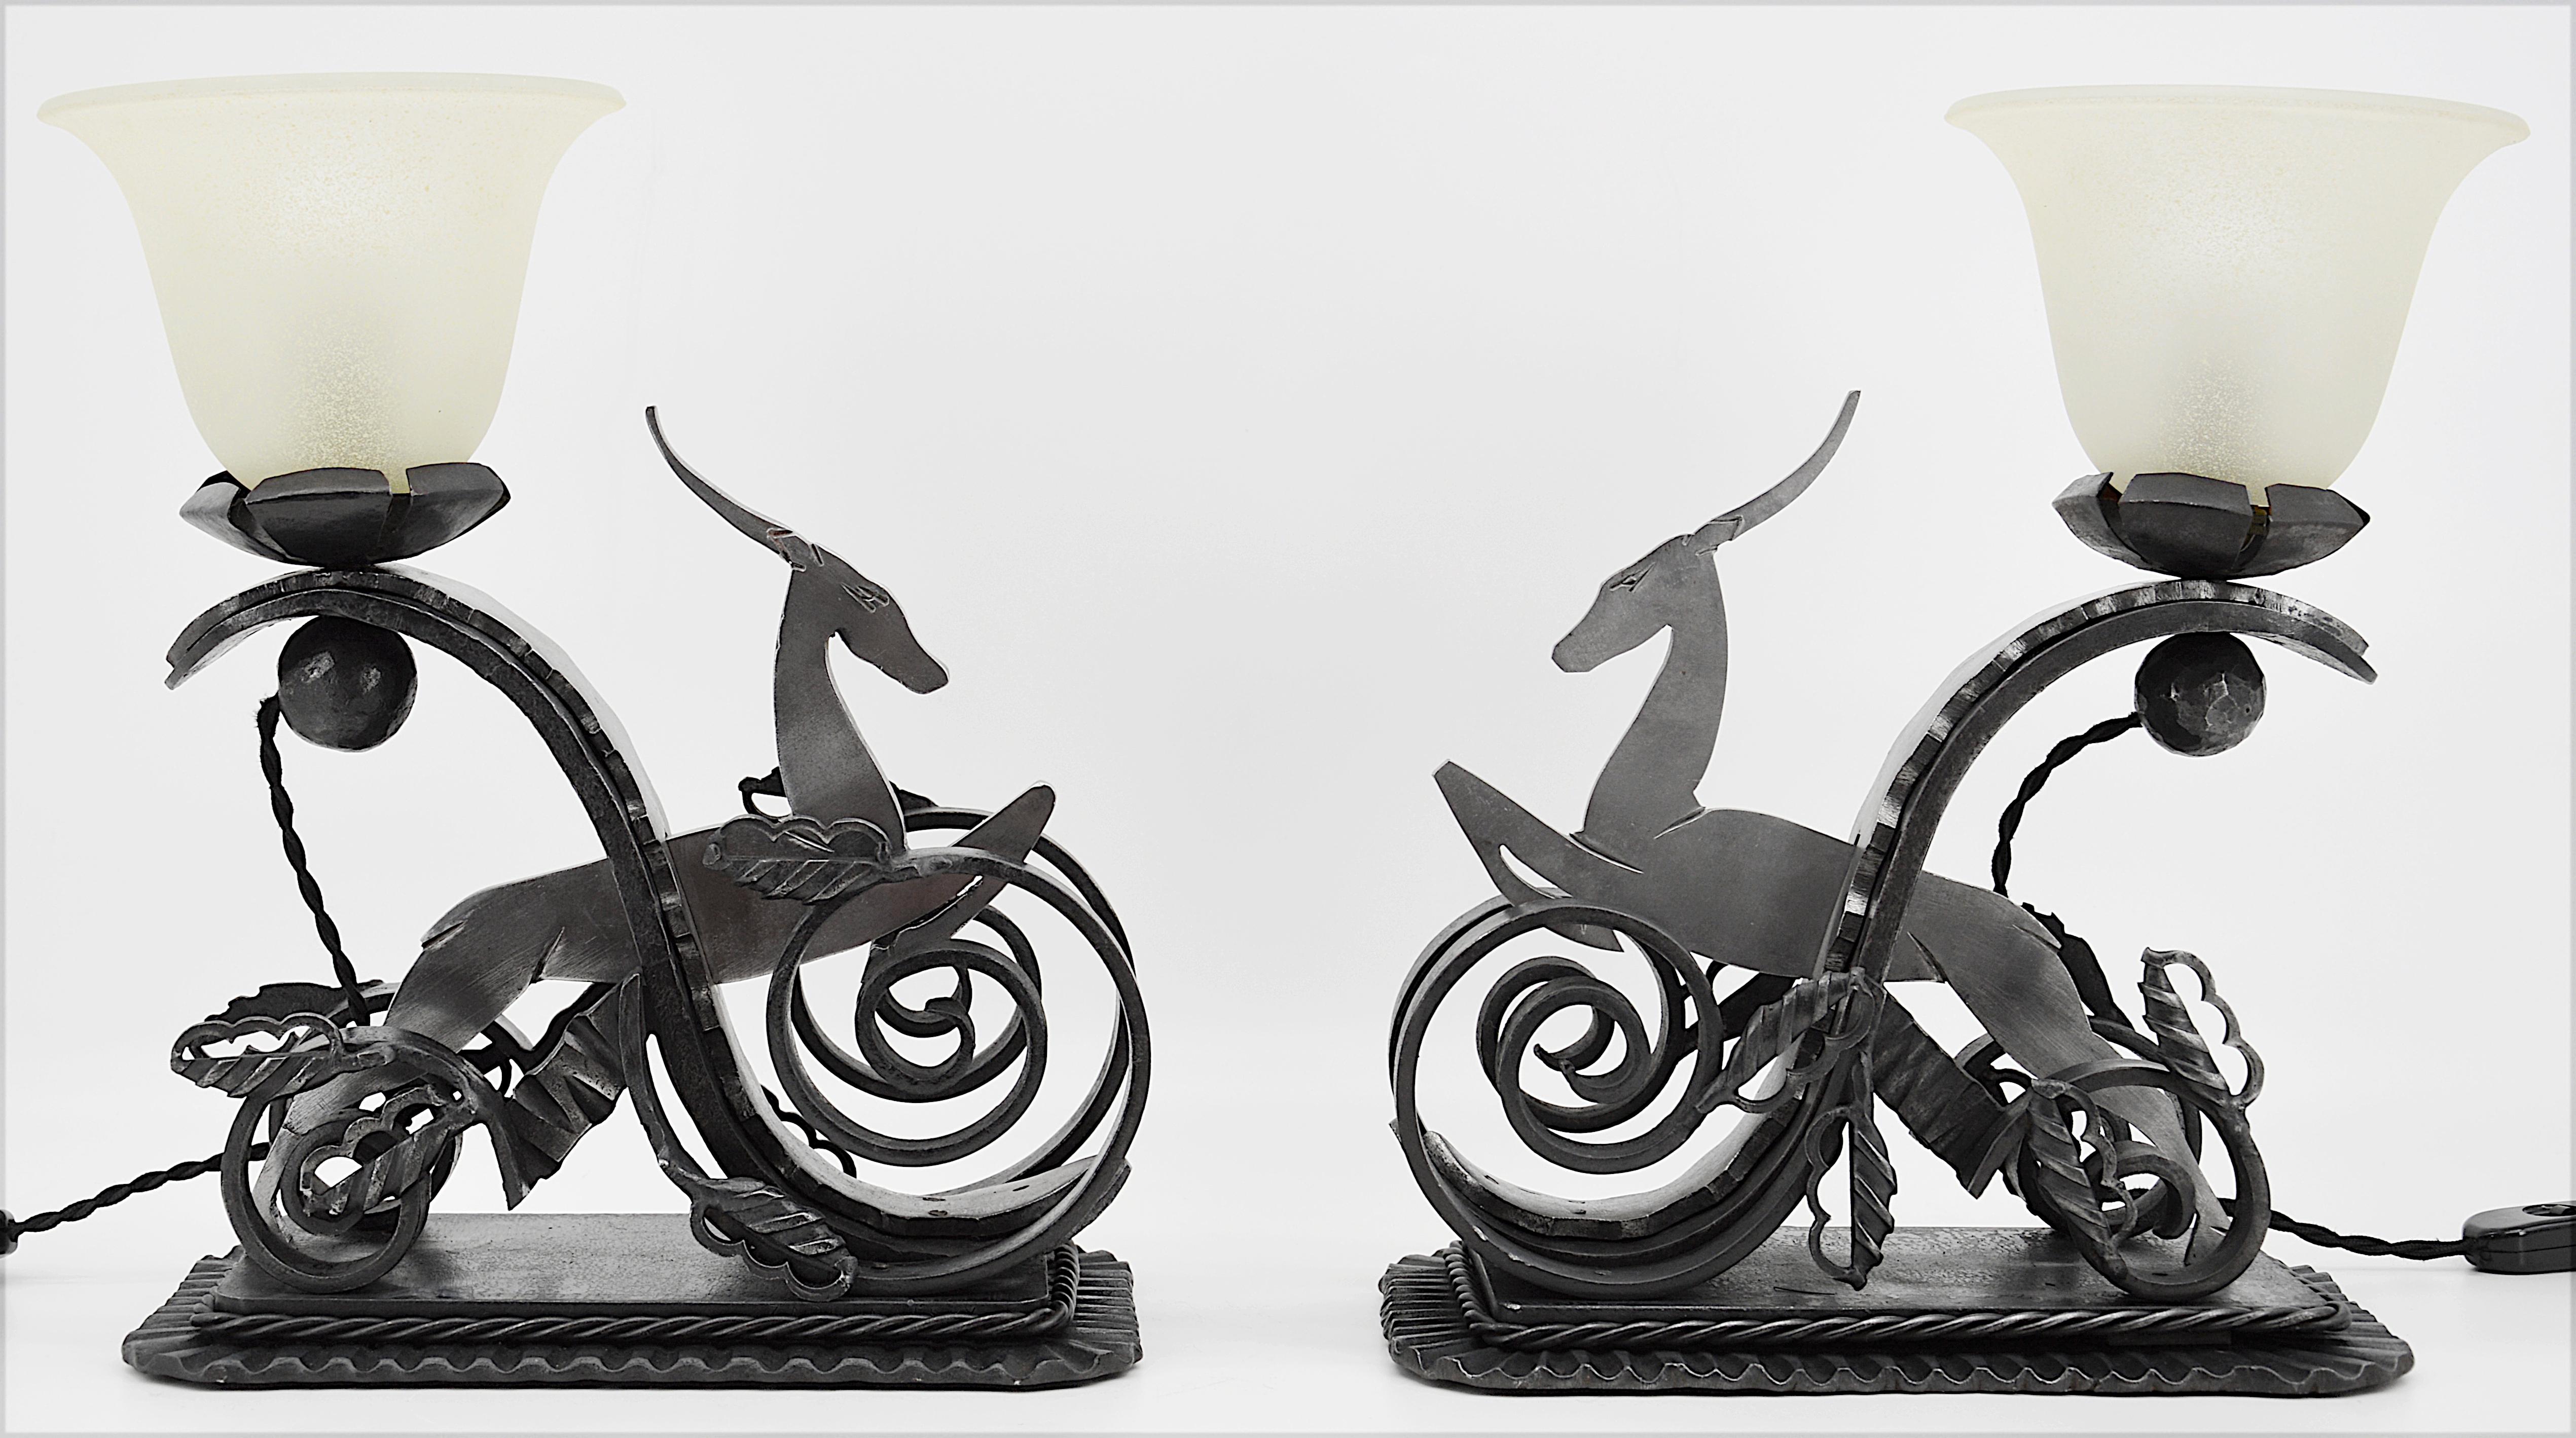 Paar Tischlampen von Michel Zadounaisky, Frankreich, 1930er Jahre. Teilweise schwarz patinierte Antilopen aus Schmiedeeisen. Abmessungen: Länge je 26 cm (10.2